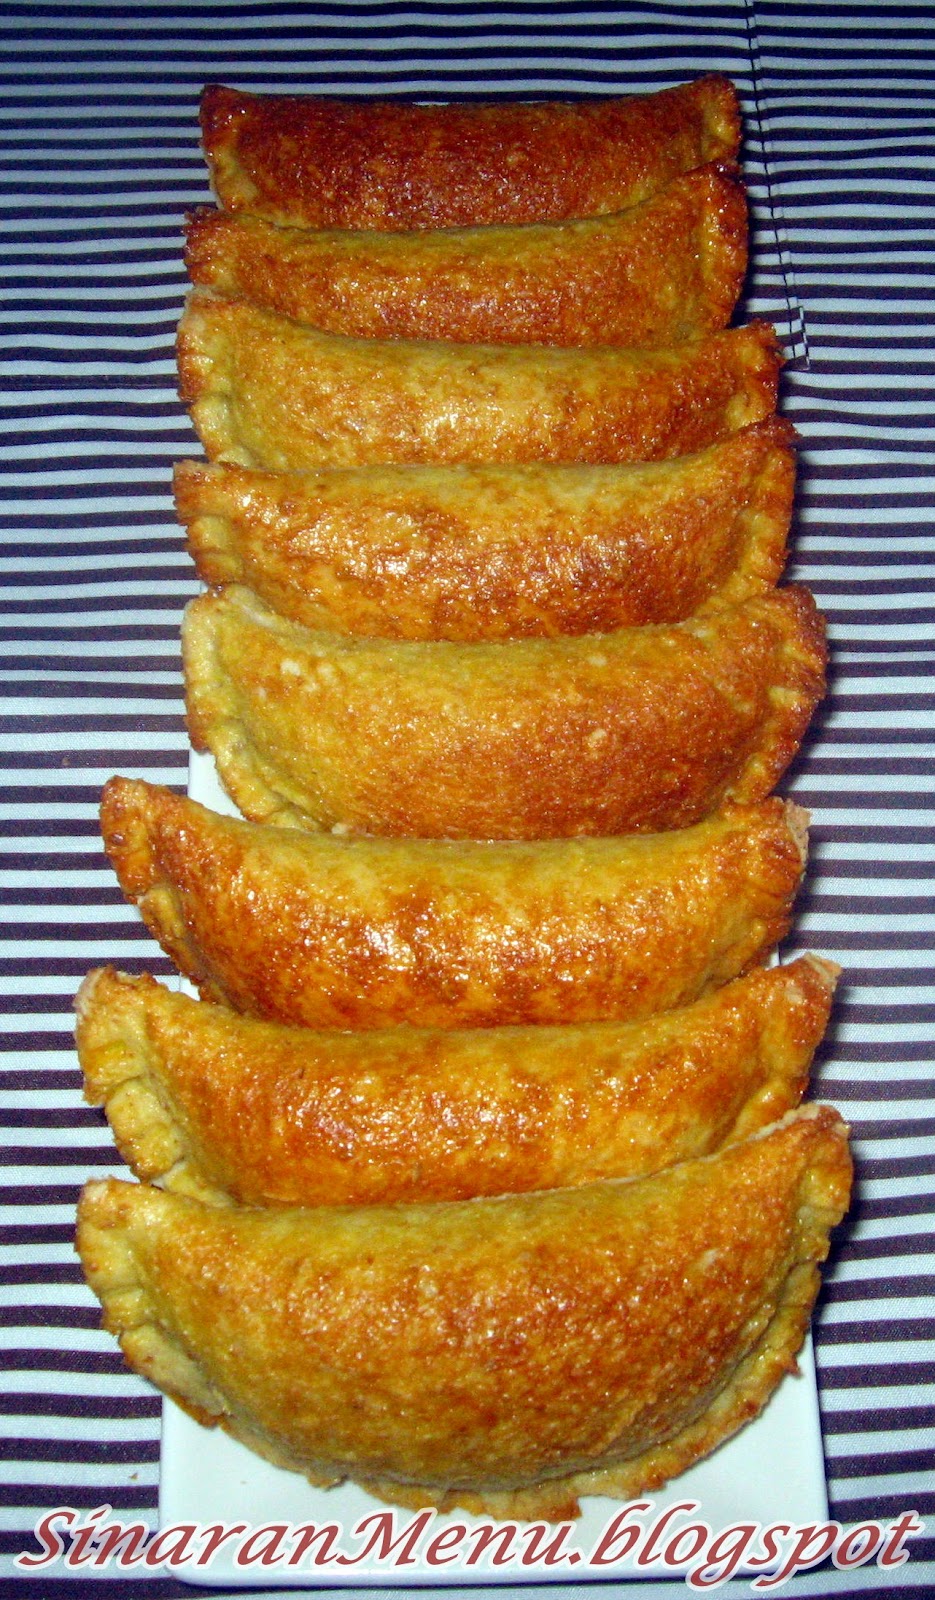 SinaranMenu: Karipap Roti